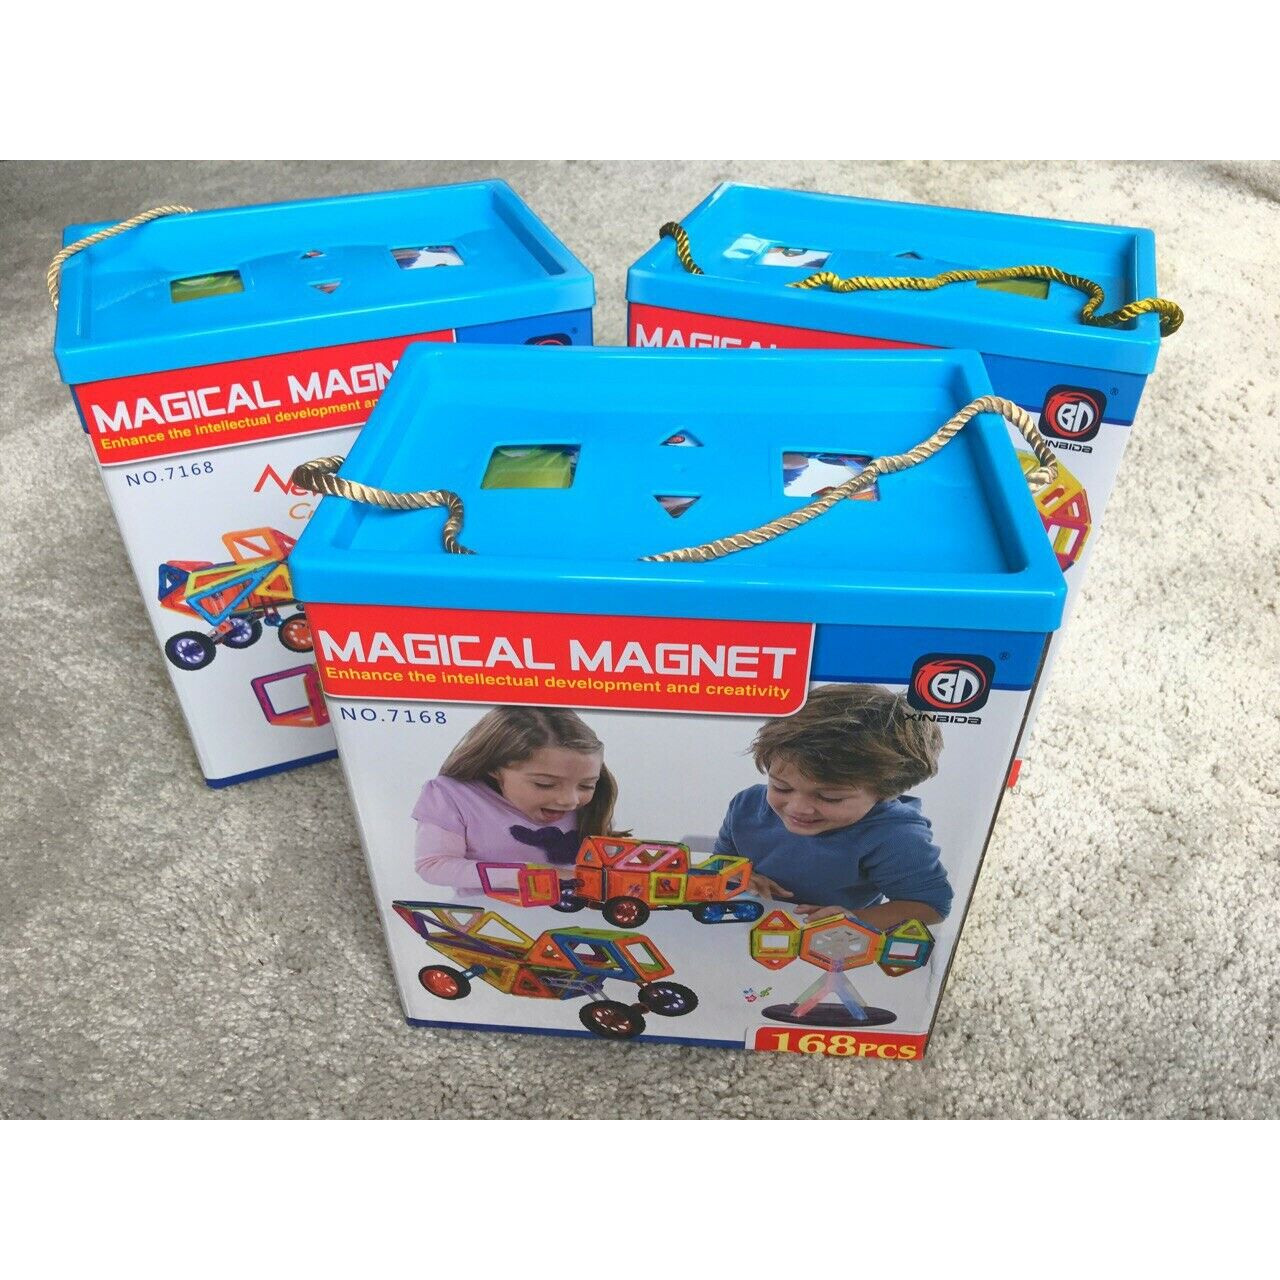 Đồ chơi nam châm sáng tạo ghép hình Magical magnet - Chính hãng Xinbida an toàn cho bé